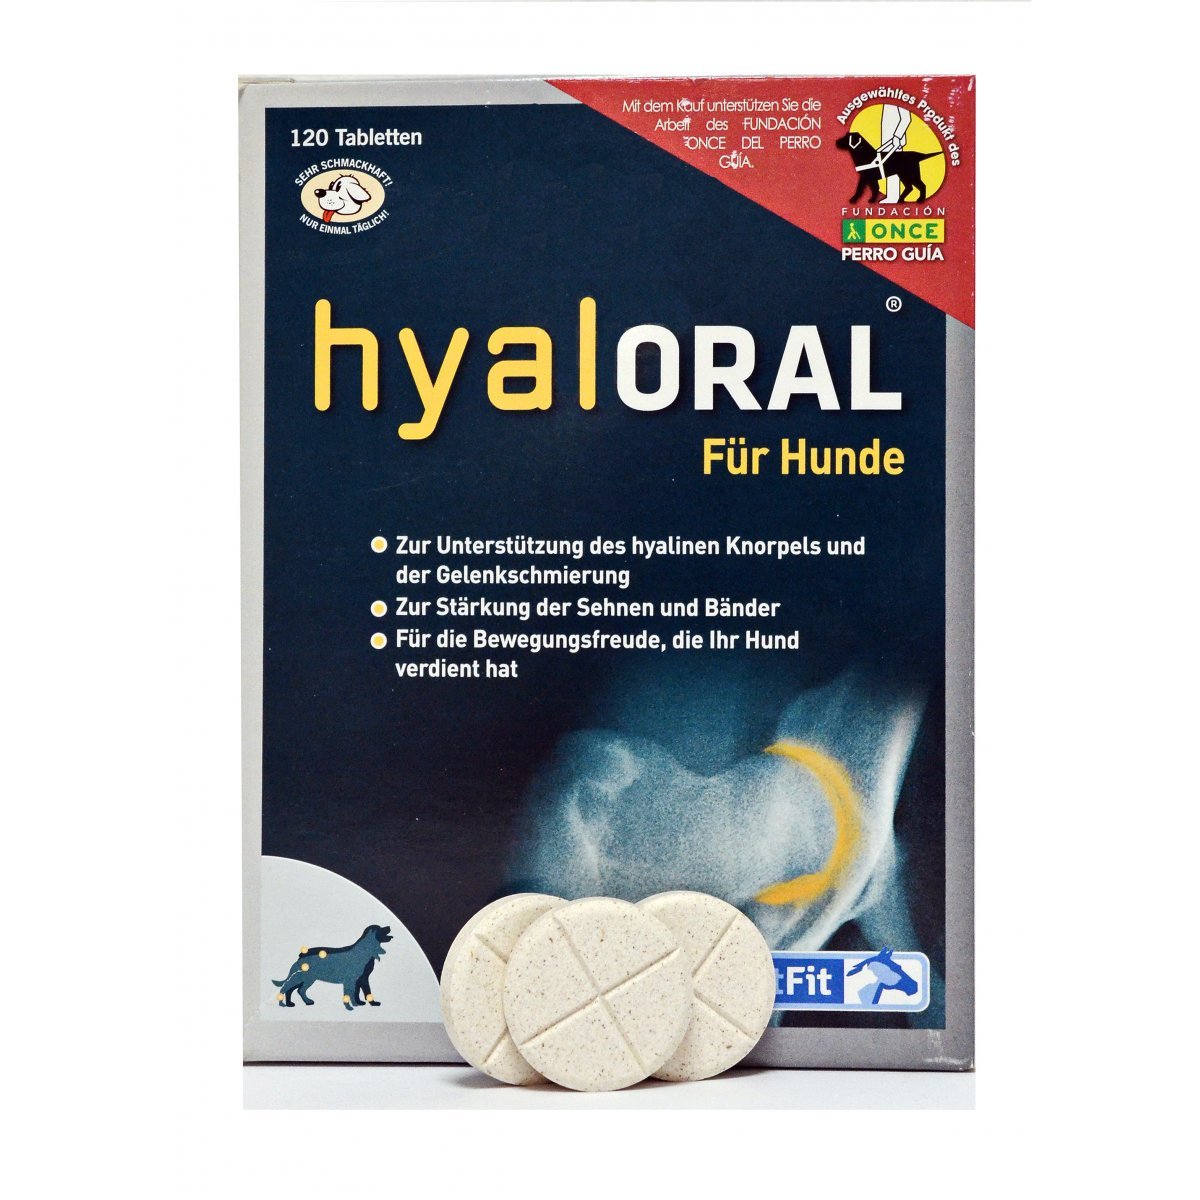 HyalOraL für Hunde Hyaluronsäure für gesunde Gelenke ohne Spritze